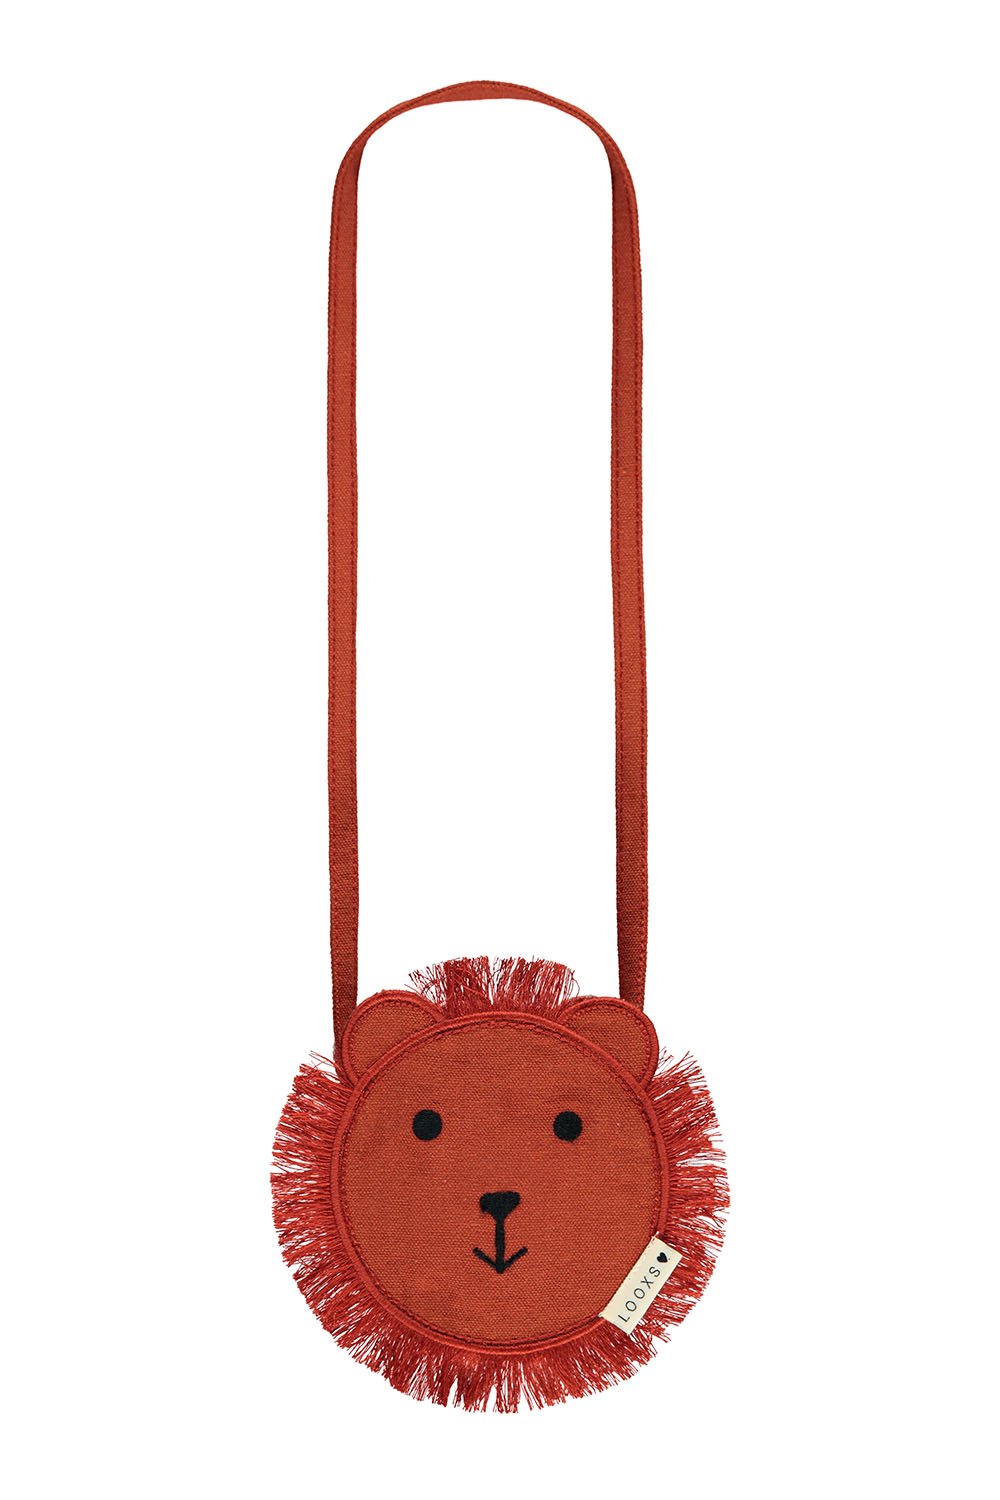 Meisjes Little bag lion van LOOXS Little in de kleur PECAN in maat ONE.